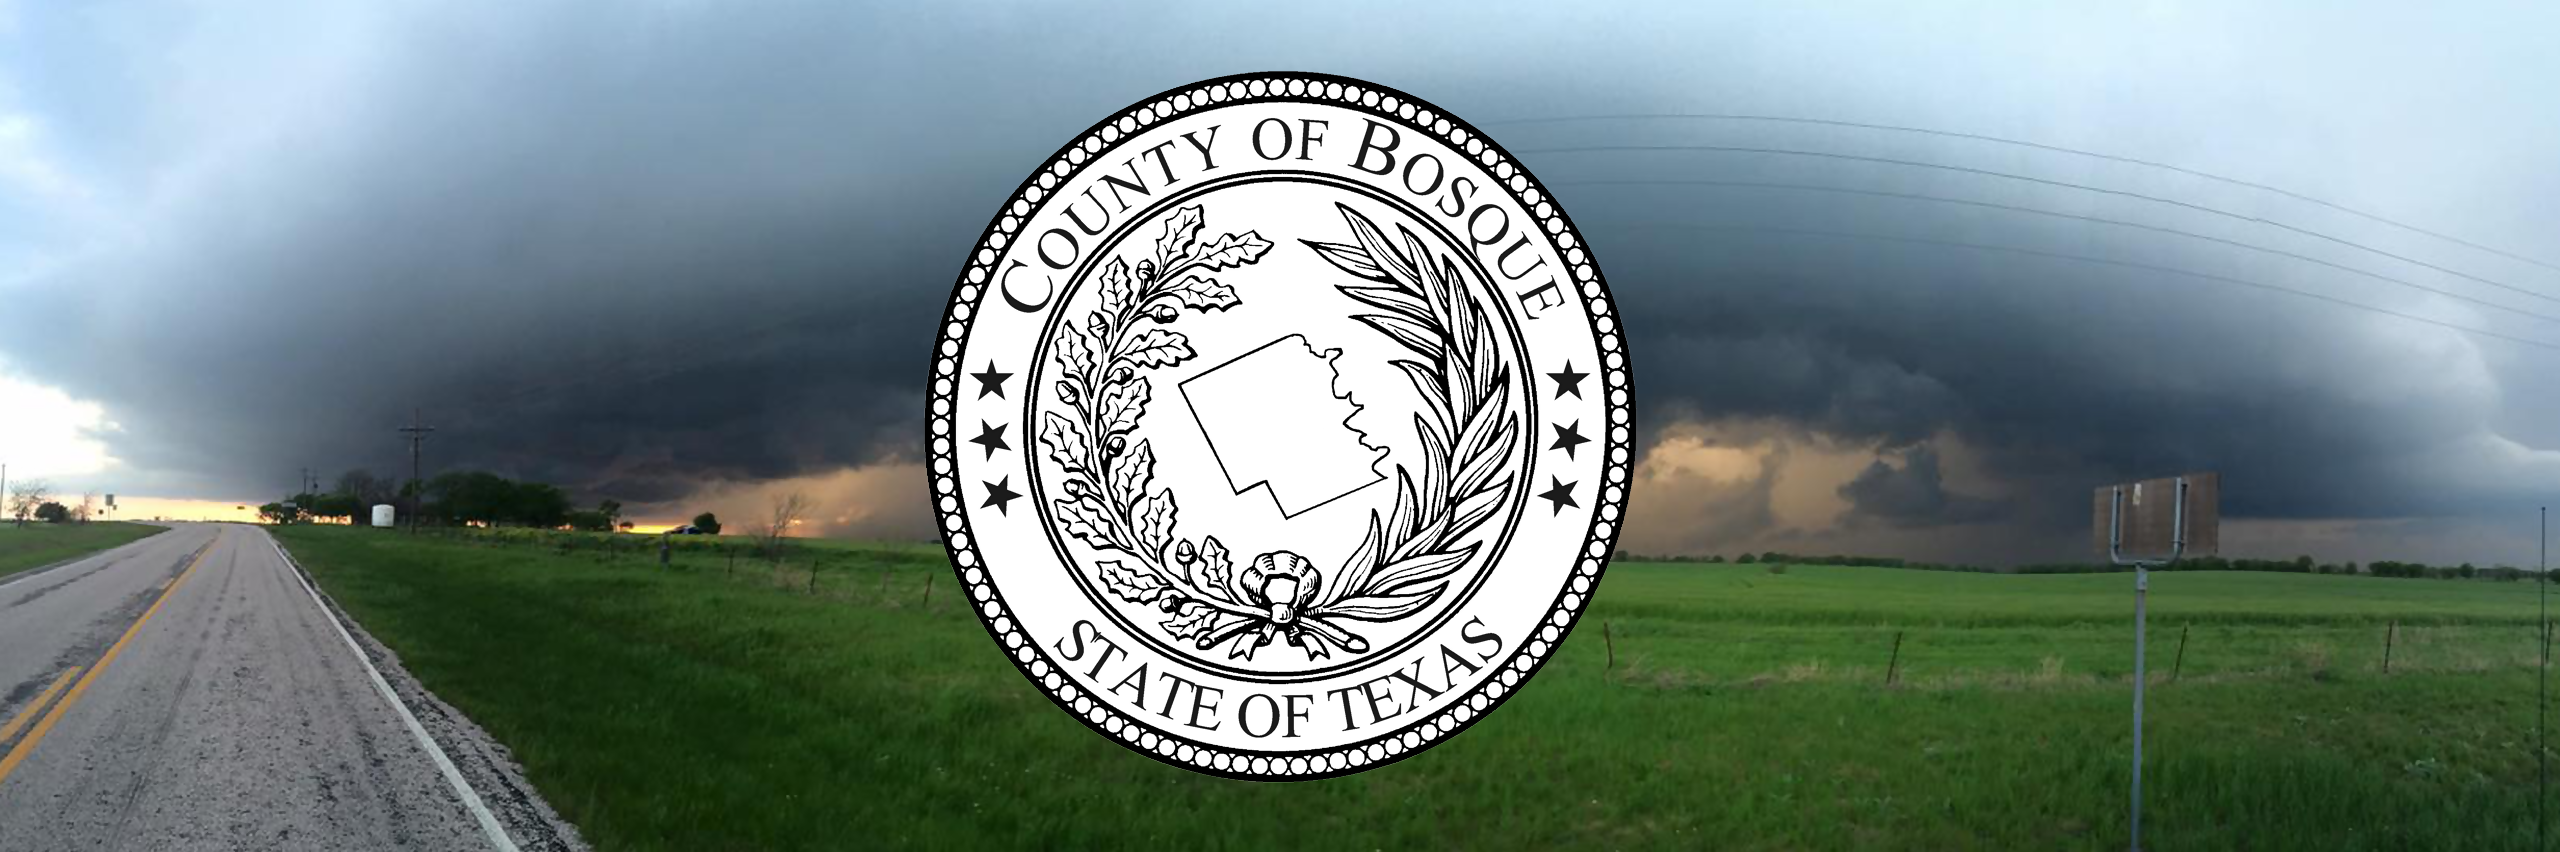 Bosque County Texas